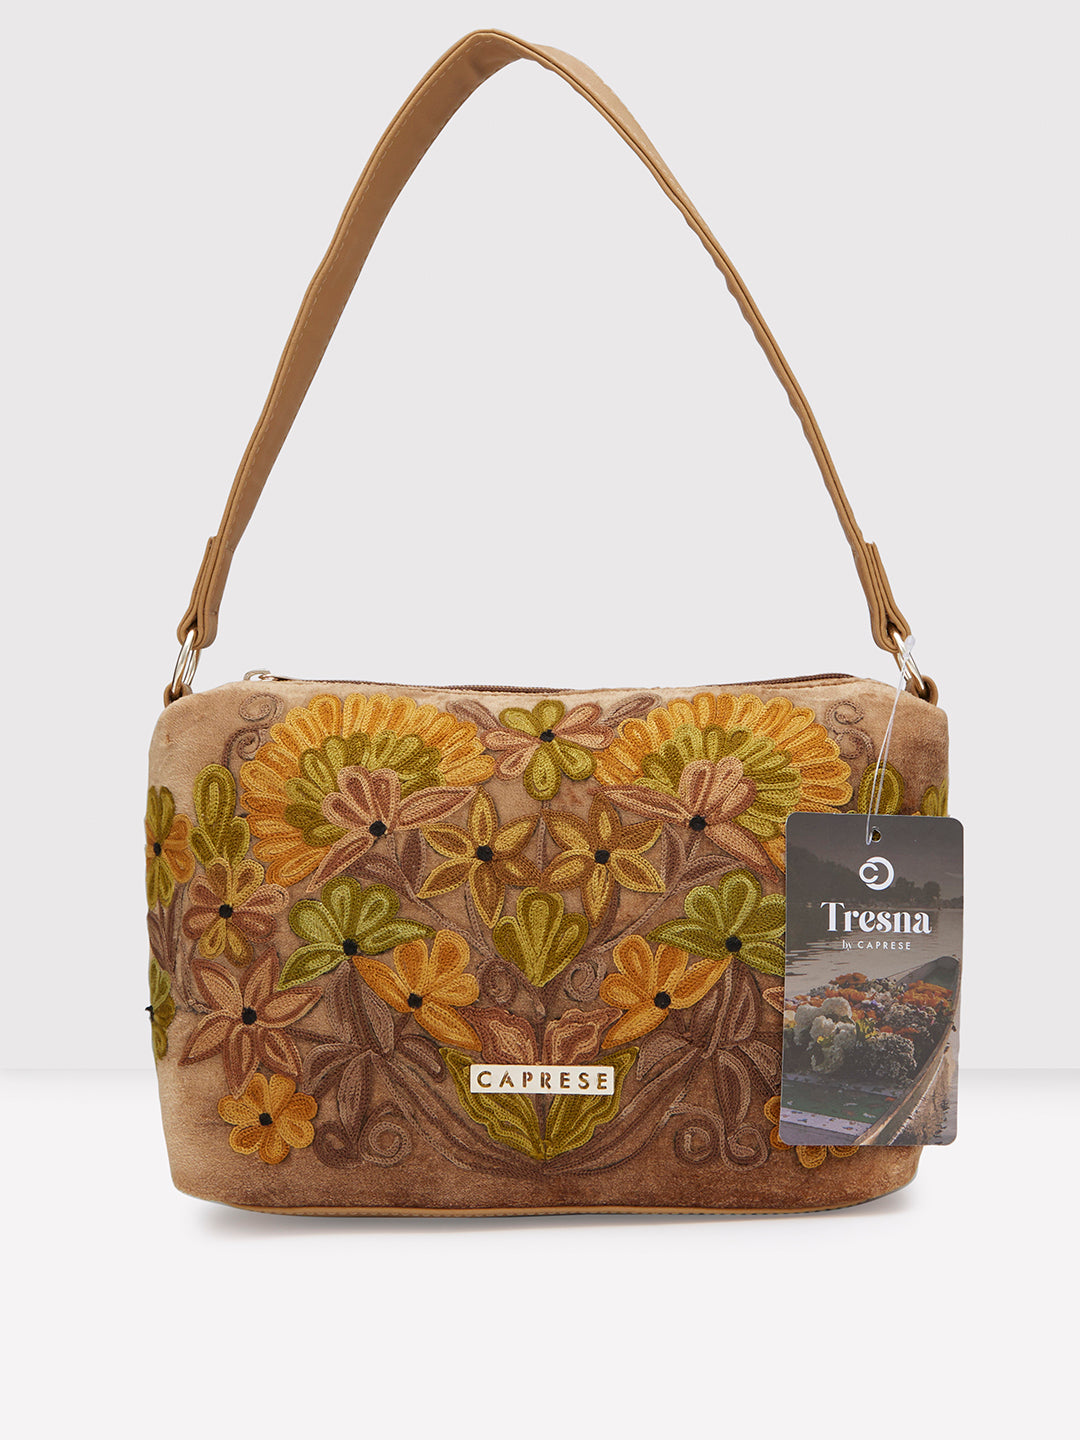 Caprese Tresna Embroidery Crossbody Handbag